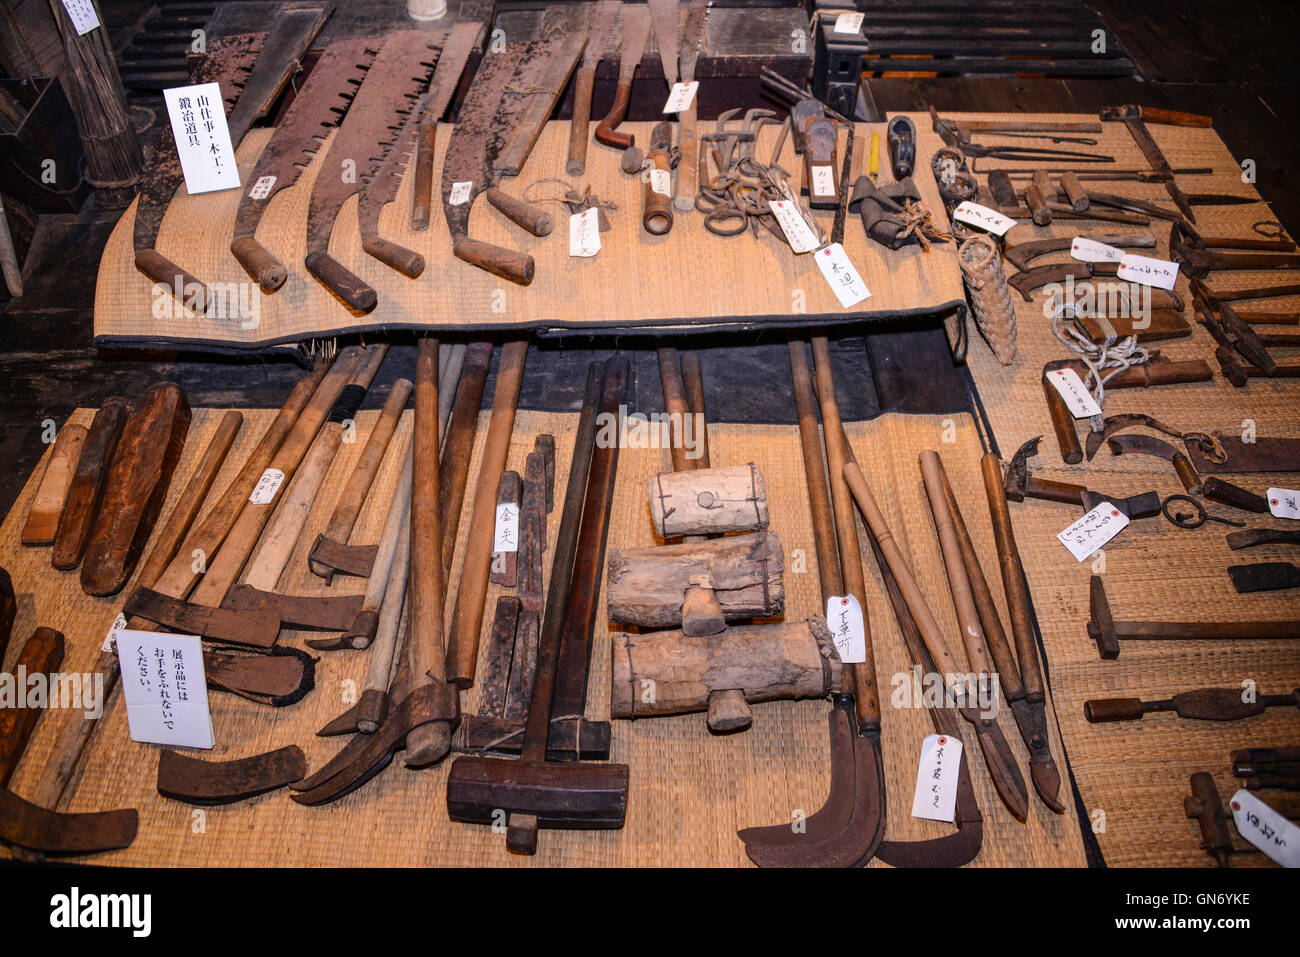 Vieux outils agricoles, Shirakawa, Japon Banque D'Images